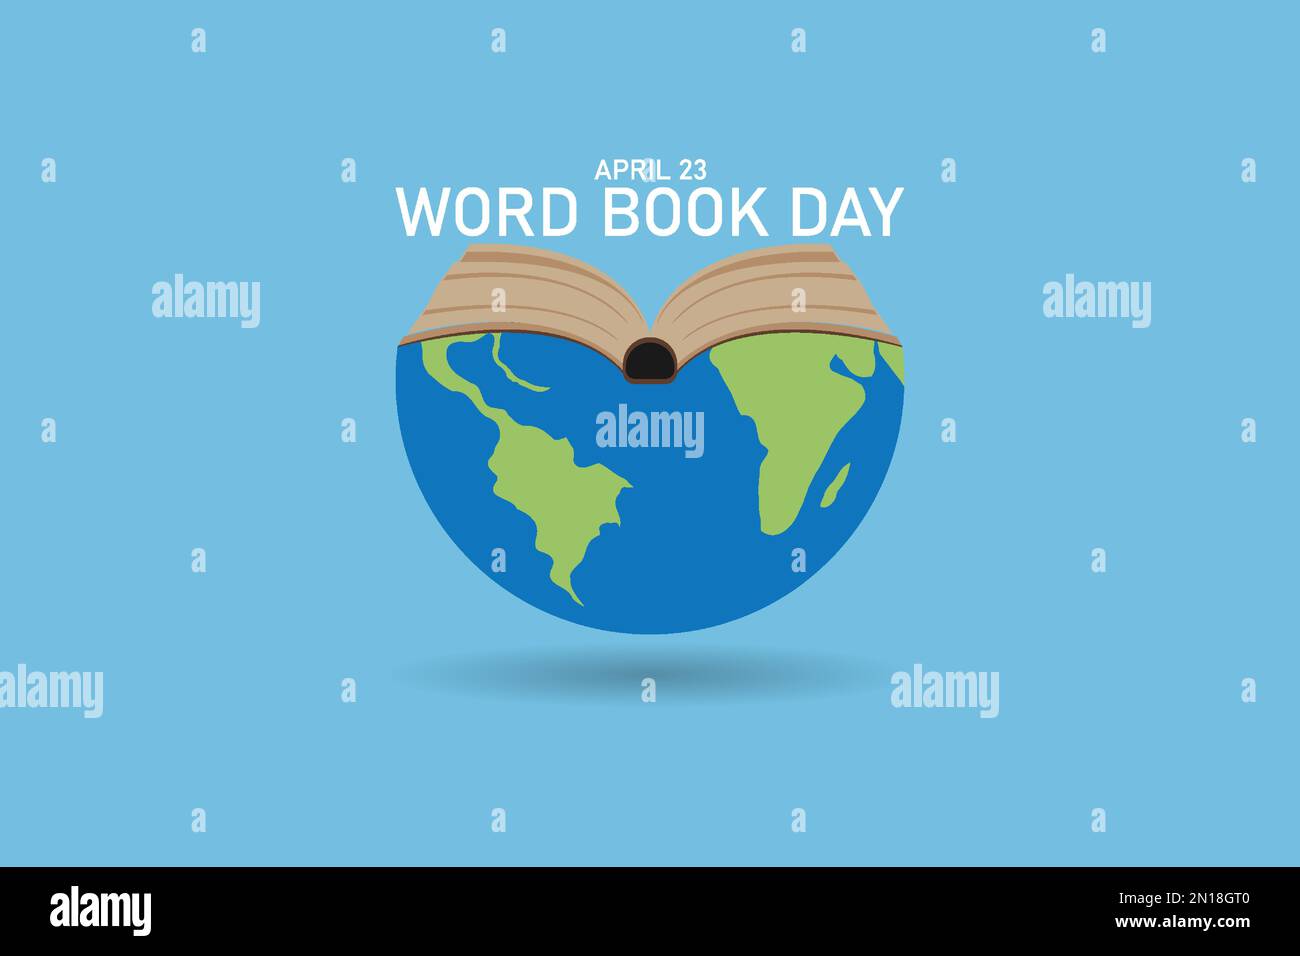 Illustration des World Book Day Banners. Bücherstapel auf der ganzen Welt mit offenen Büchern auf blauem Hintergrund. Bildungs-Vektordarstellung. Stock Vektor